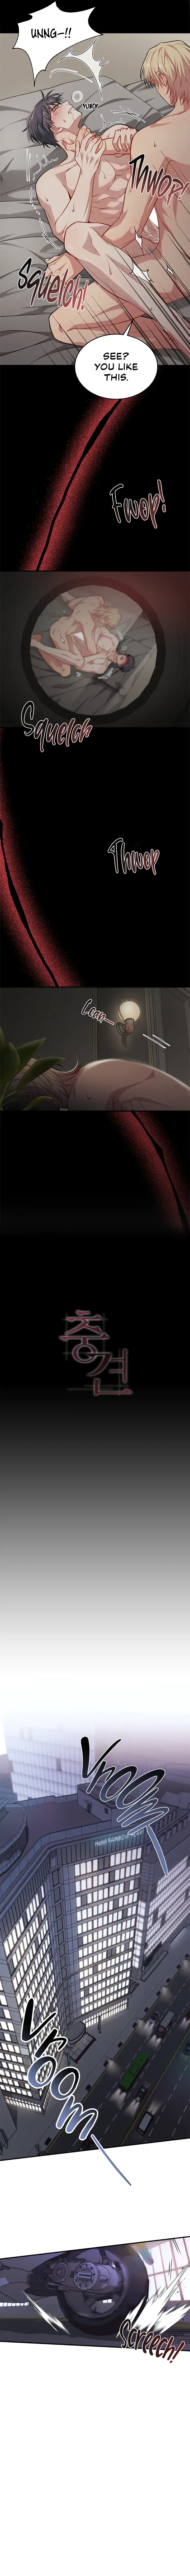 Faithful Dog (Hazama) - Chapter 1 - Zinchan Manga